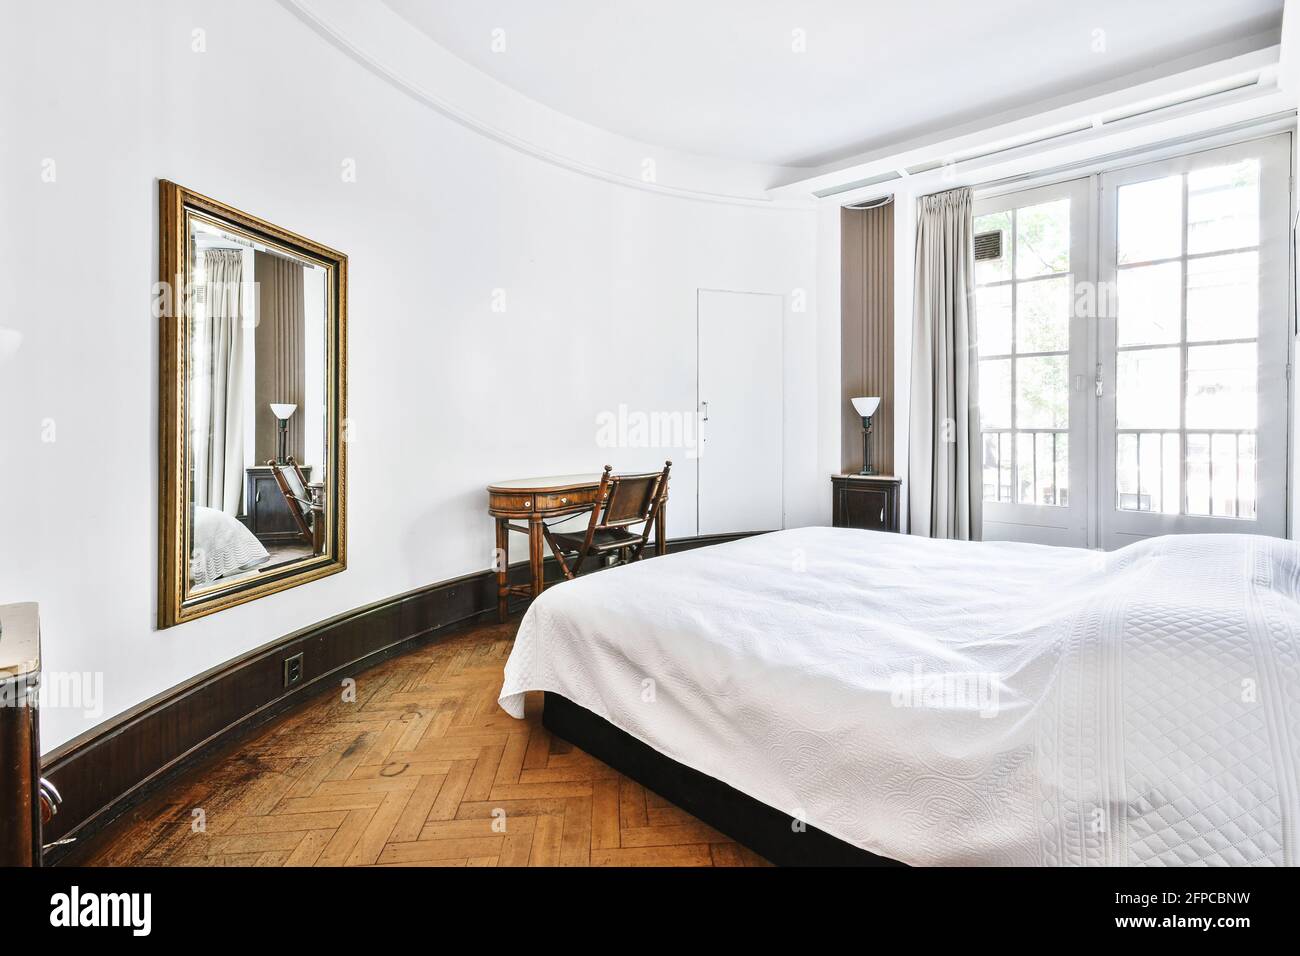 Stilvolles Wohndesign des Schlafzimmers mit ungewöhnlicher geschwungener  Architektur Weiße Wände mit Bett und Vintage-Holztisch Mit Stuhl  Stockfotografie - Alamy